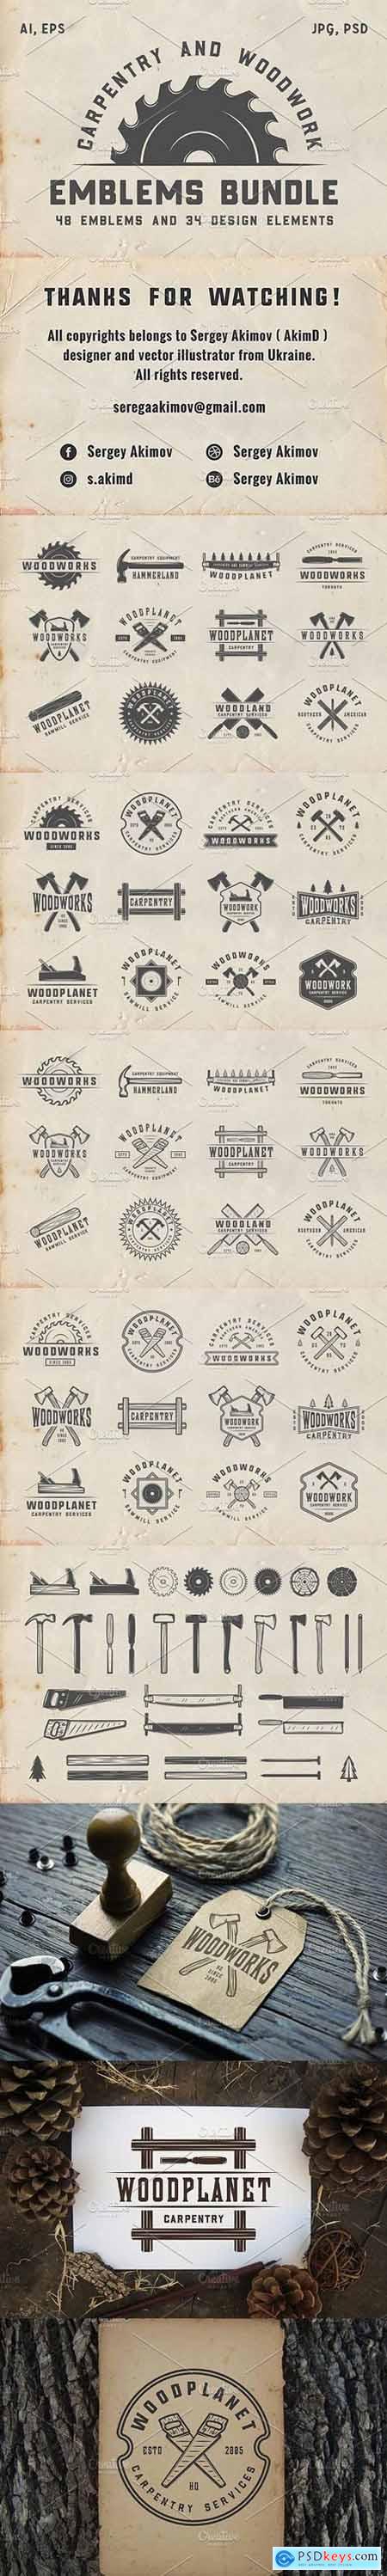 Vintage Carpentry Emblems part 2